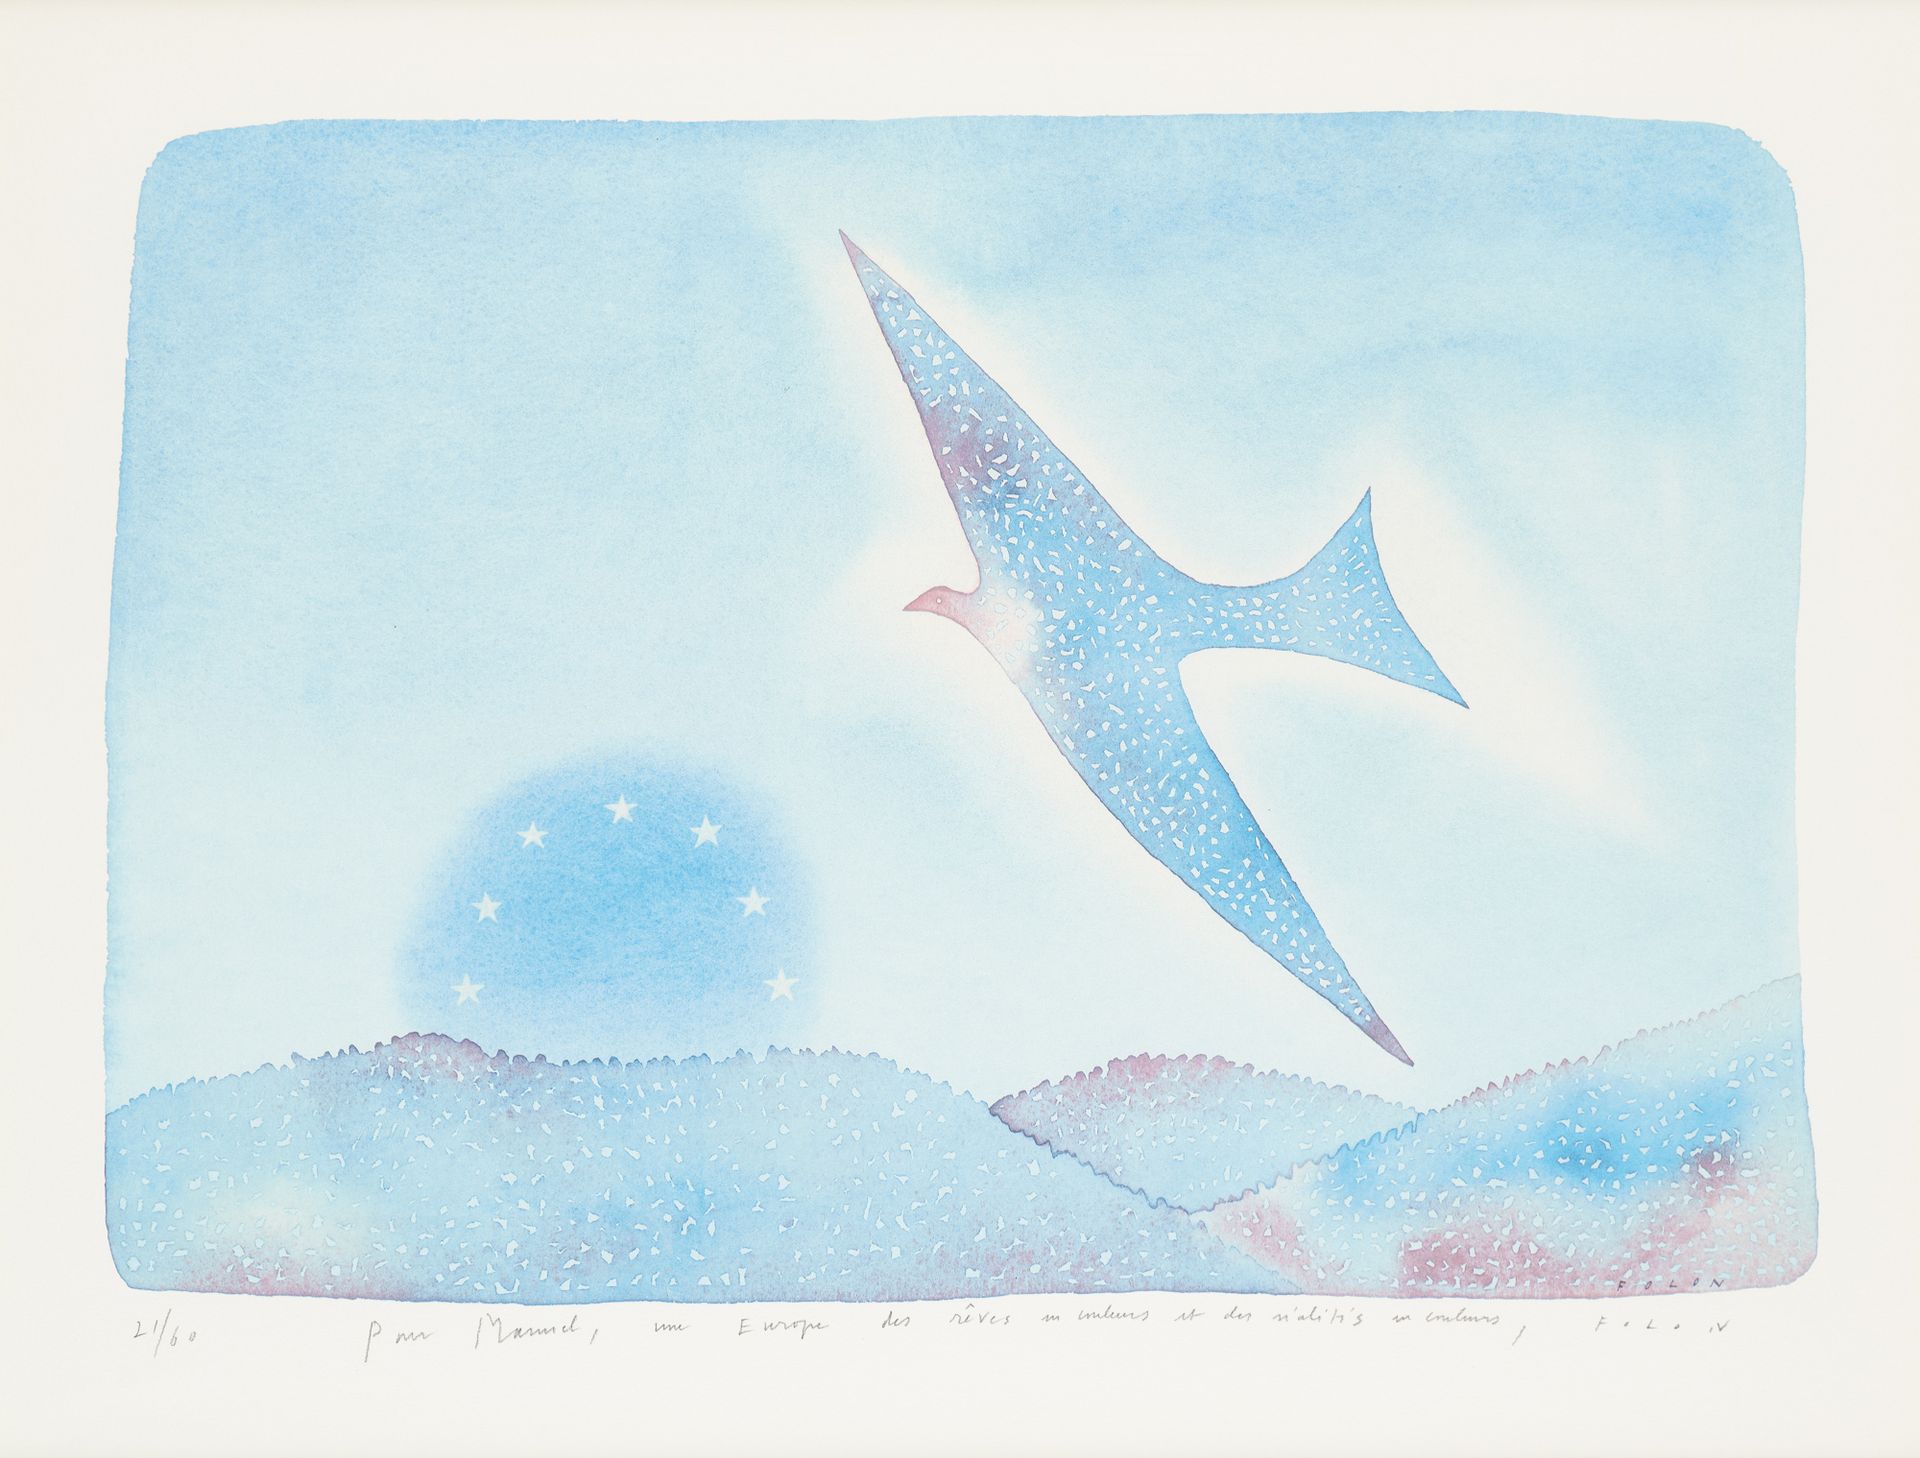 Jean-Michel FOLON École belge (1934-2005) 印刷品，纸上彩色石版画："梦想的欧洲"。

版上和版下都有签名：Folon，&hellip;